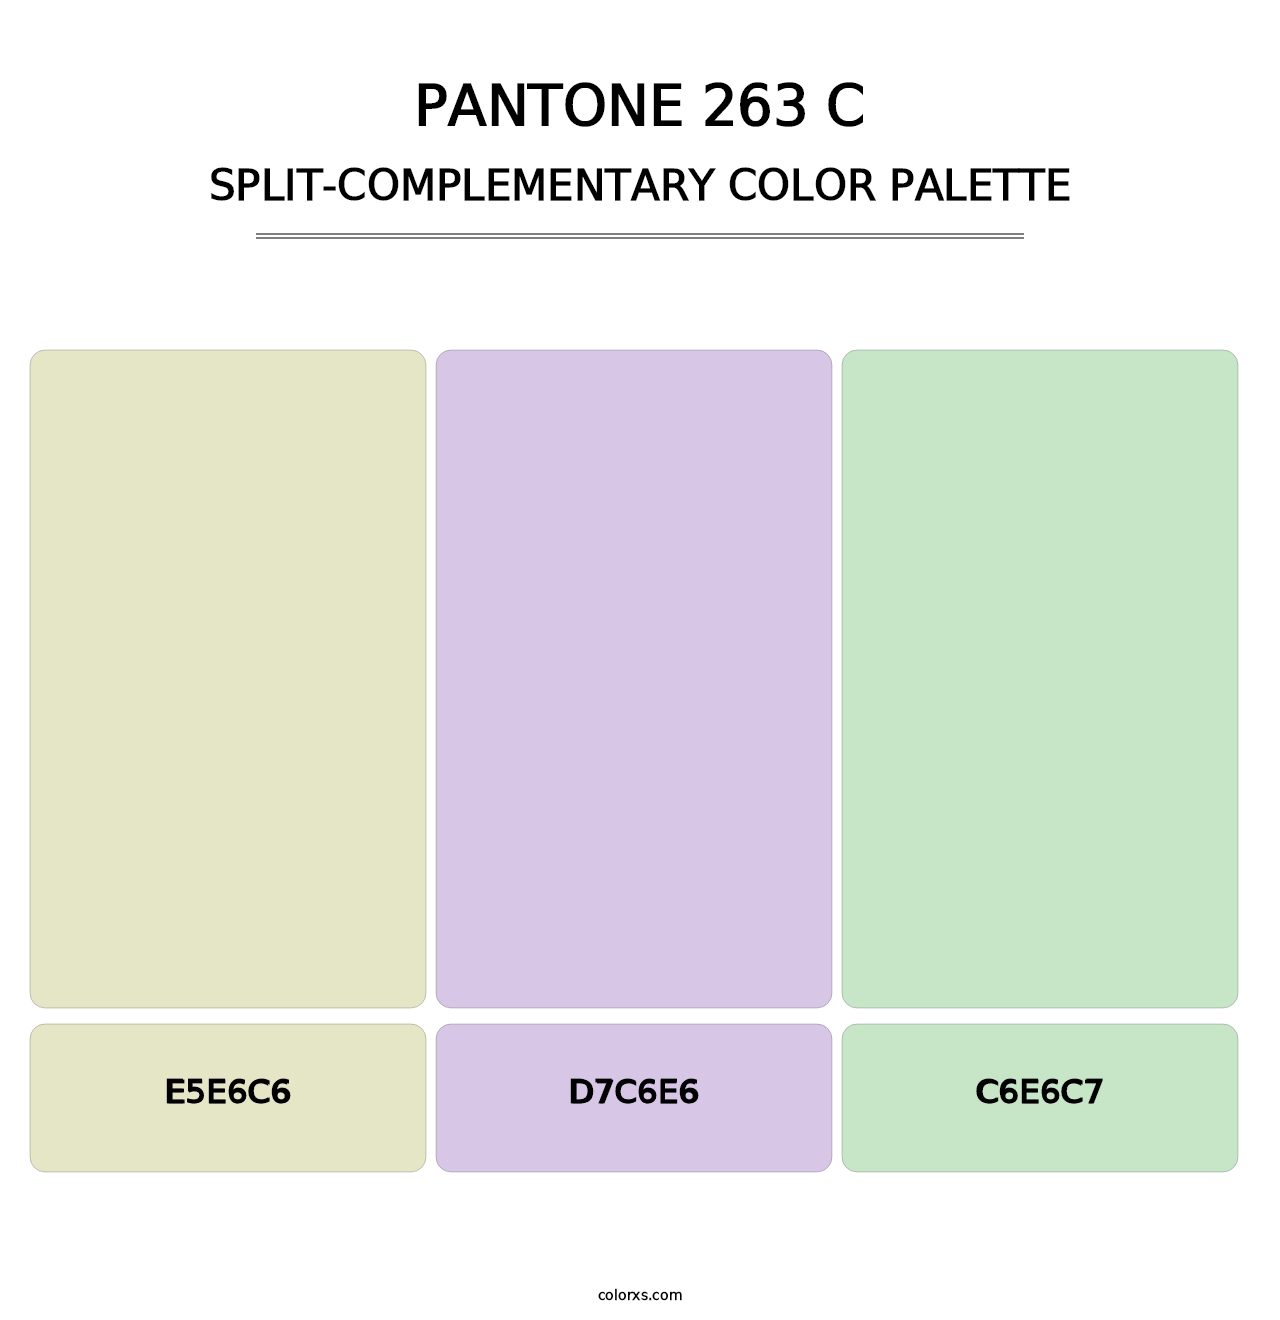 PANTONE 263 C - Split-Complementary Color Palette